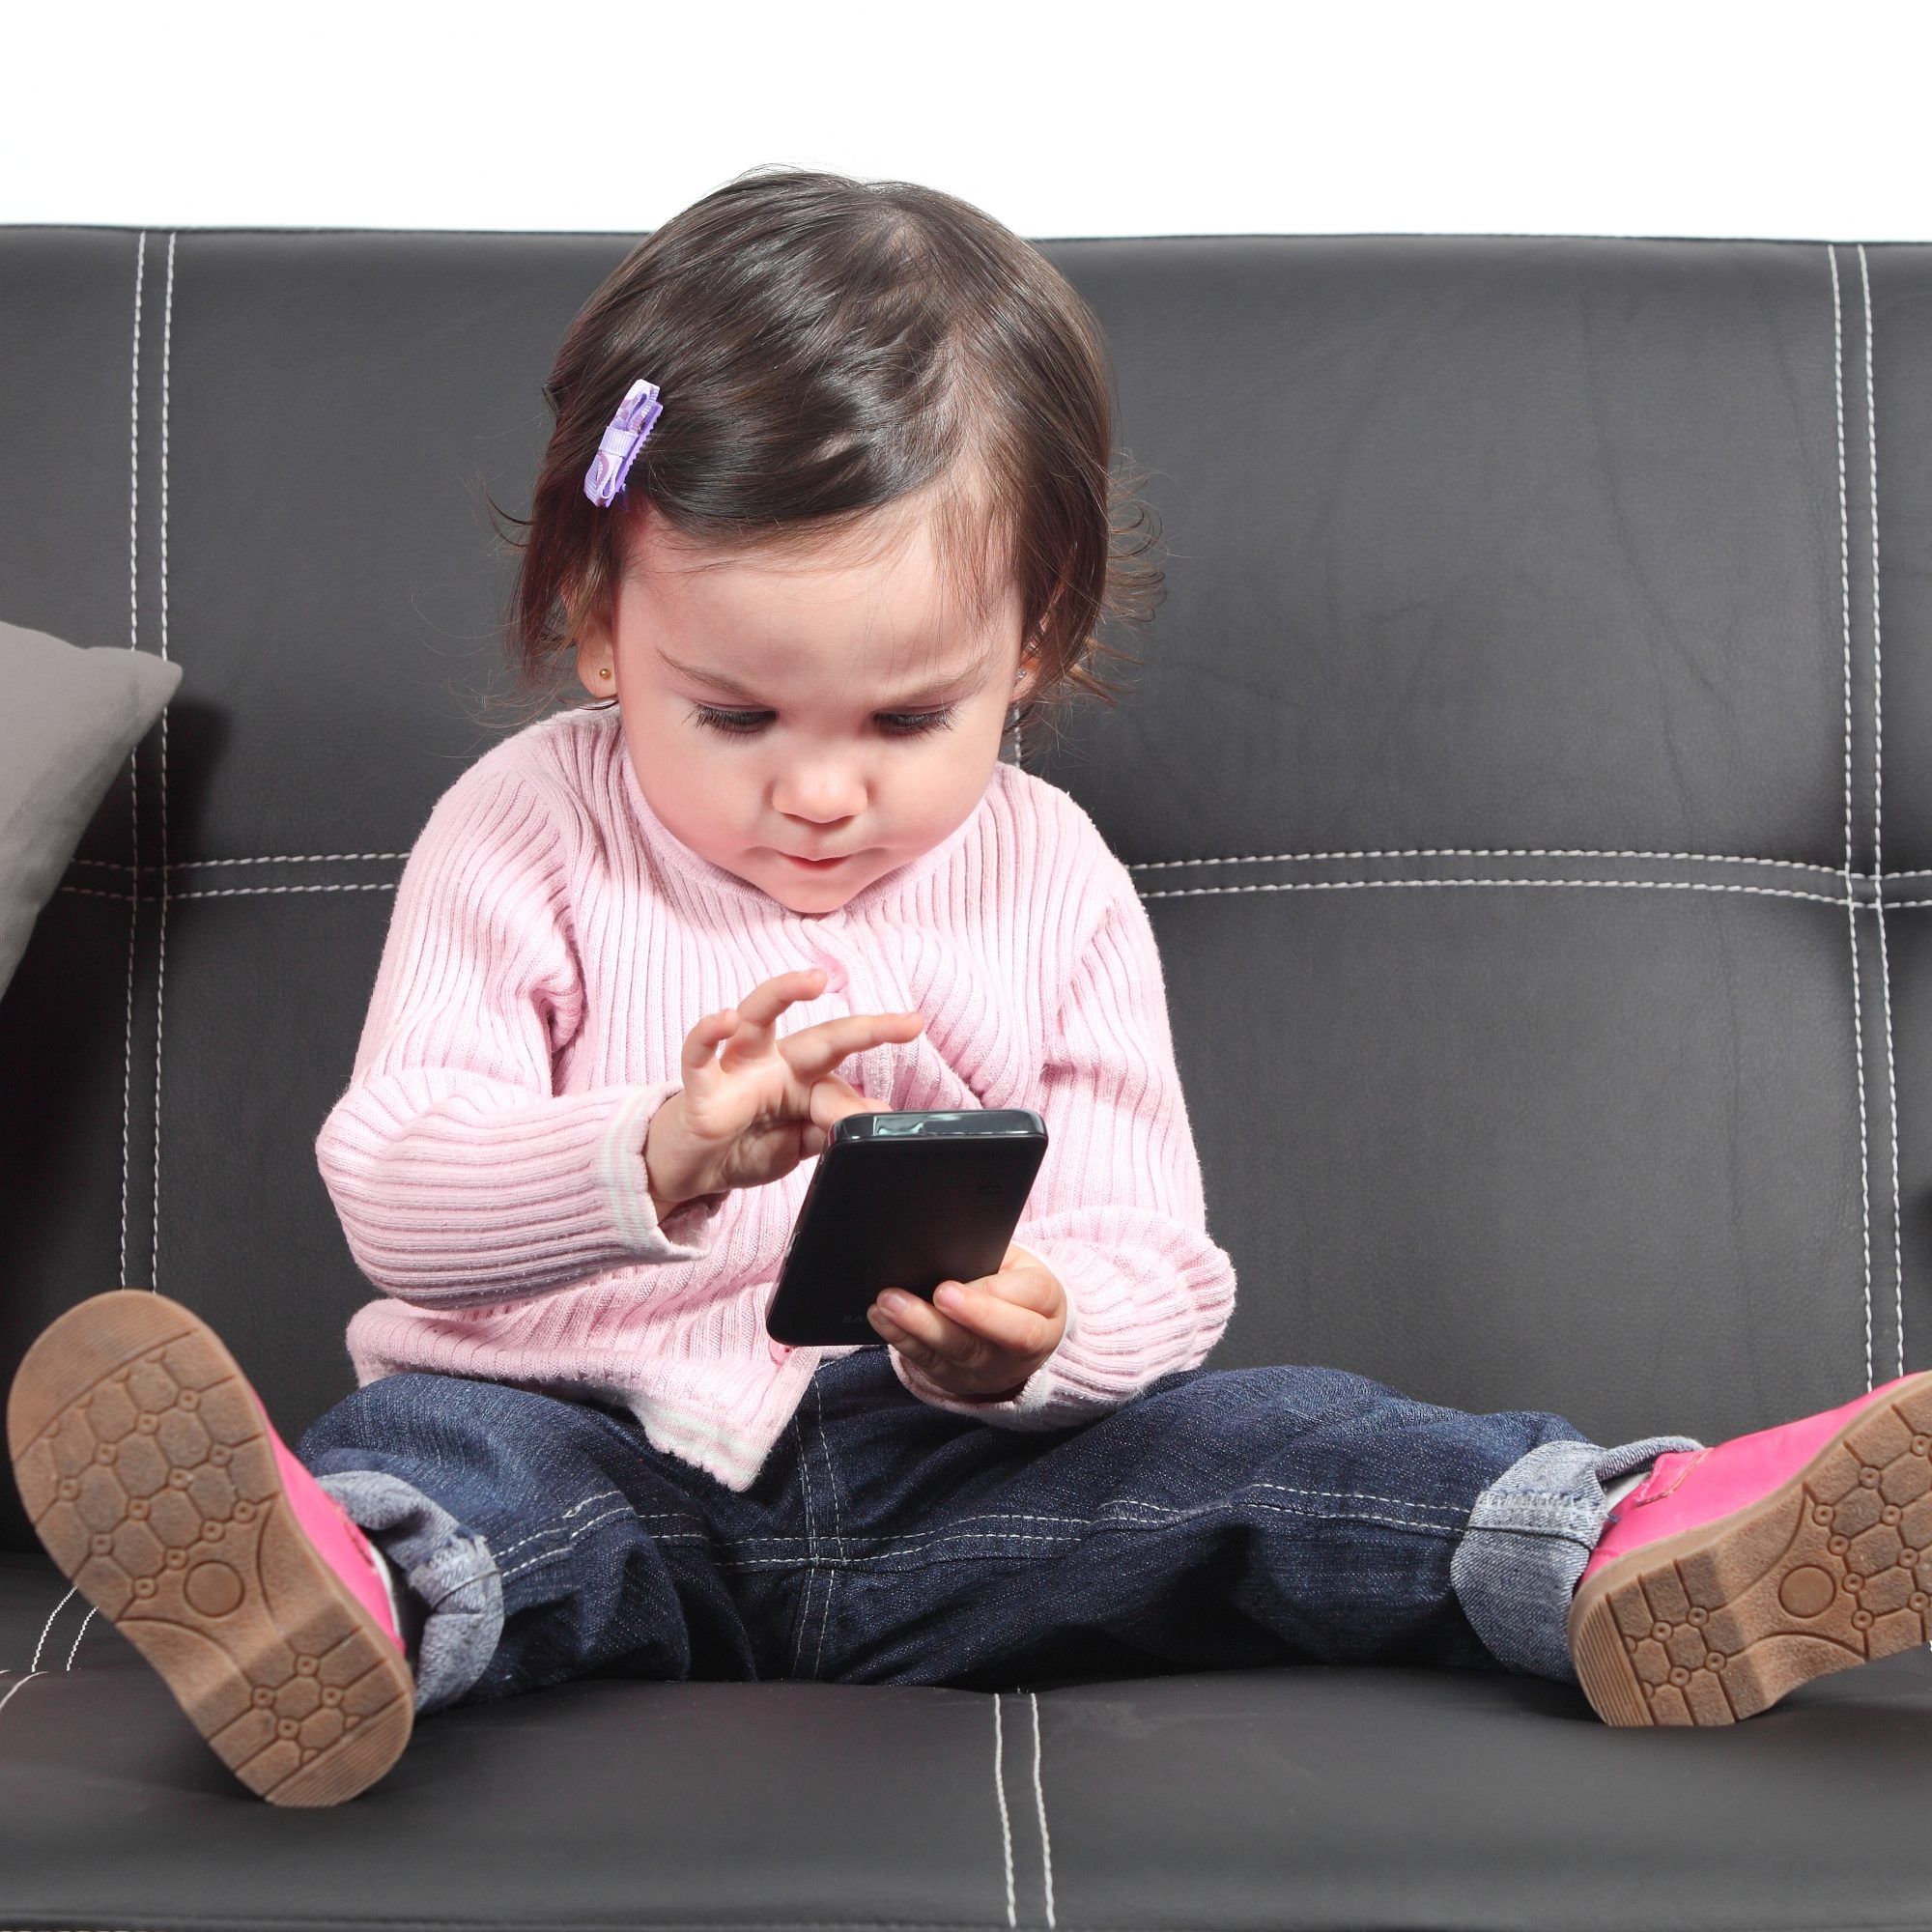 Согласно новому исследованию, дети младшего возраста, использующие сенсорные экраны, меньше спят